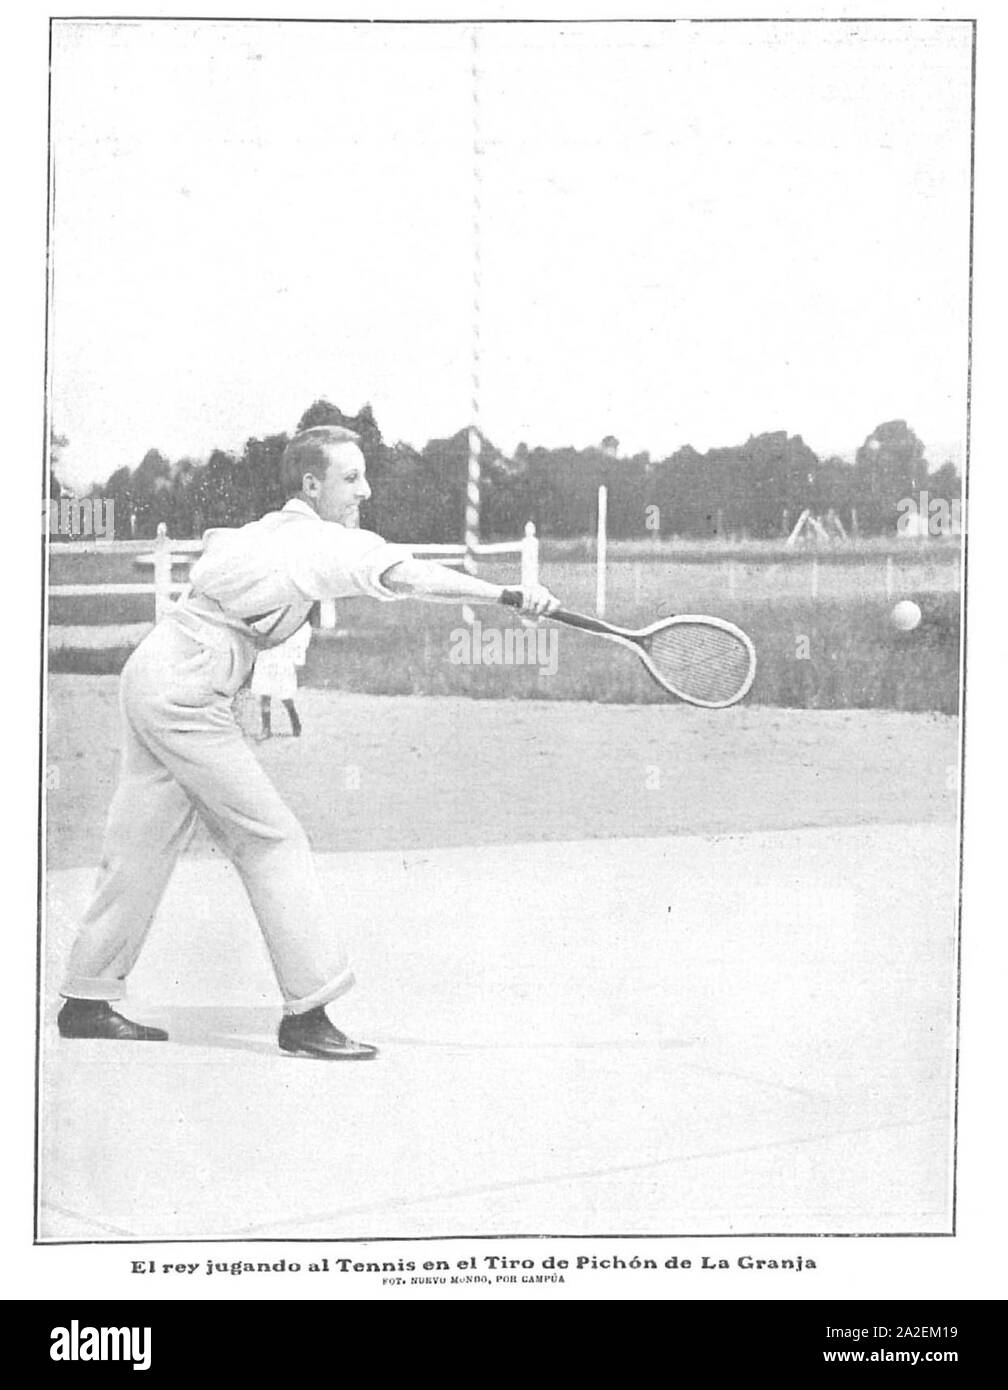 El Rey jugando al Tennis en El Tiro de Pichón de La Granja, de Campúa, Nuevo Mundo, 19-07-1906. Stockfoto